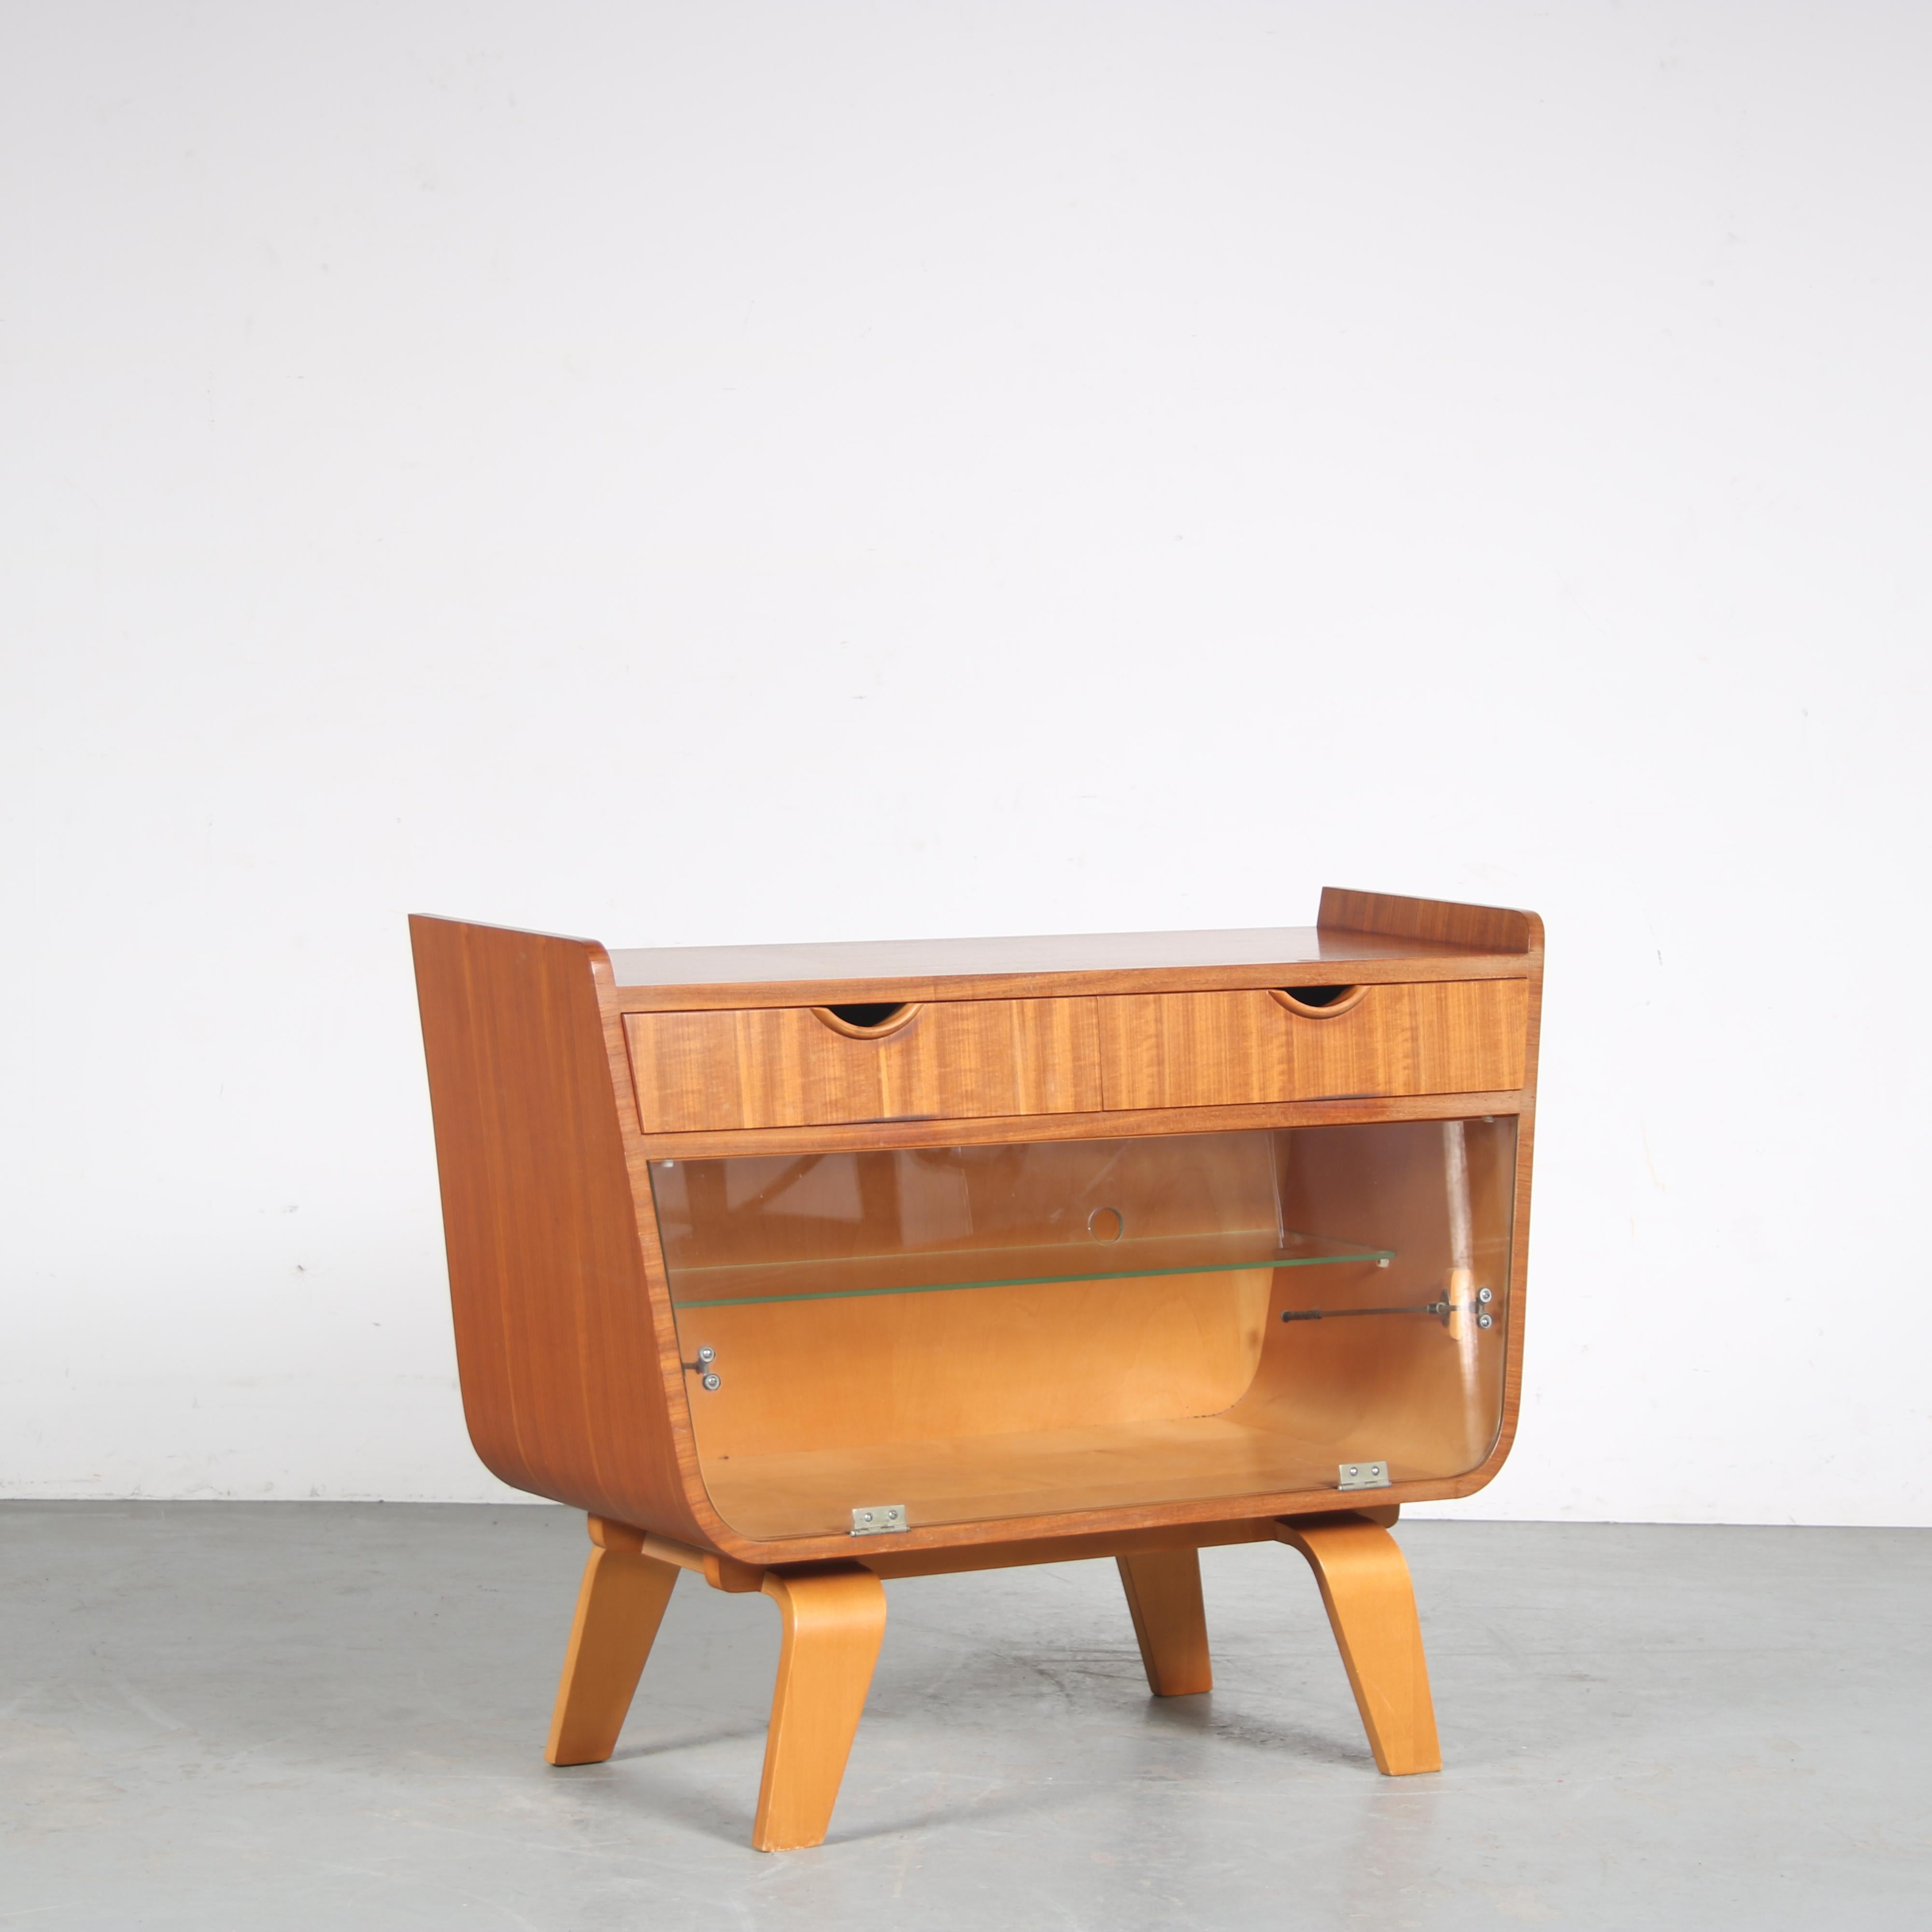 Un joli petit meuble de bar conçu par Cor Alons et fabriqué par De Boer Gouda aux Pays-Bas vers 1950.

Il est fabriqué en bois de bouleau et en contreplaqué de haute qualité, avec une porte en verre. La finition arrondie et les pieds courbés sont